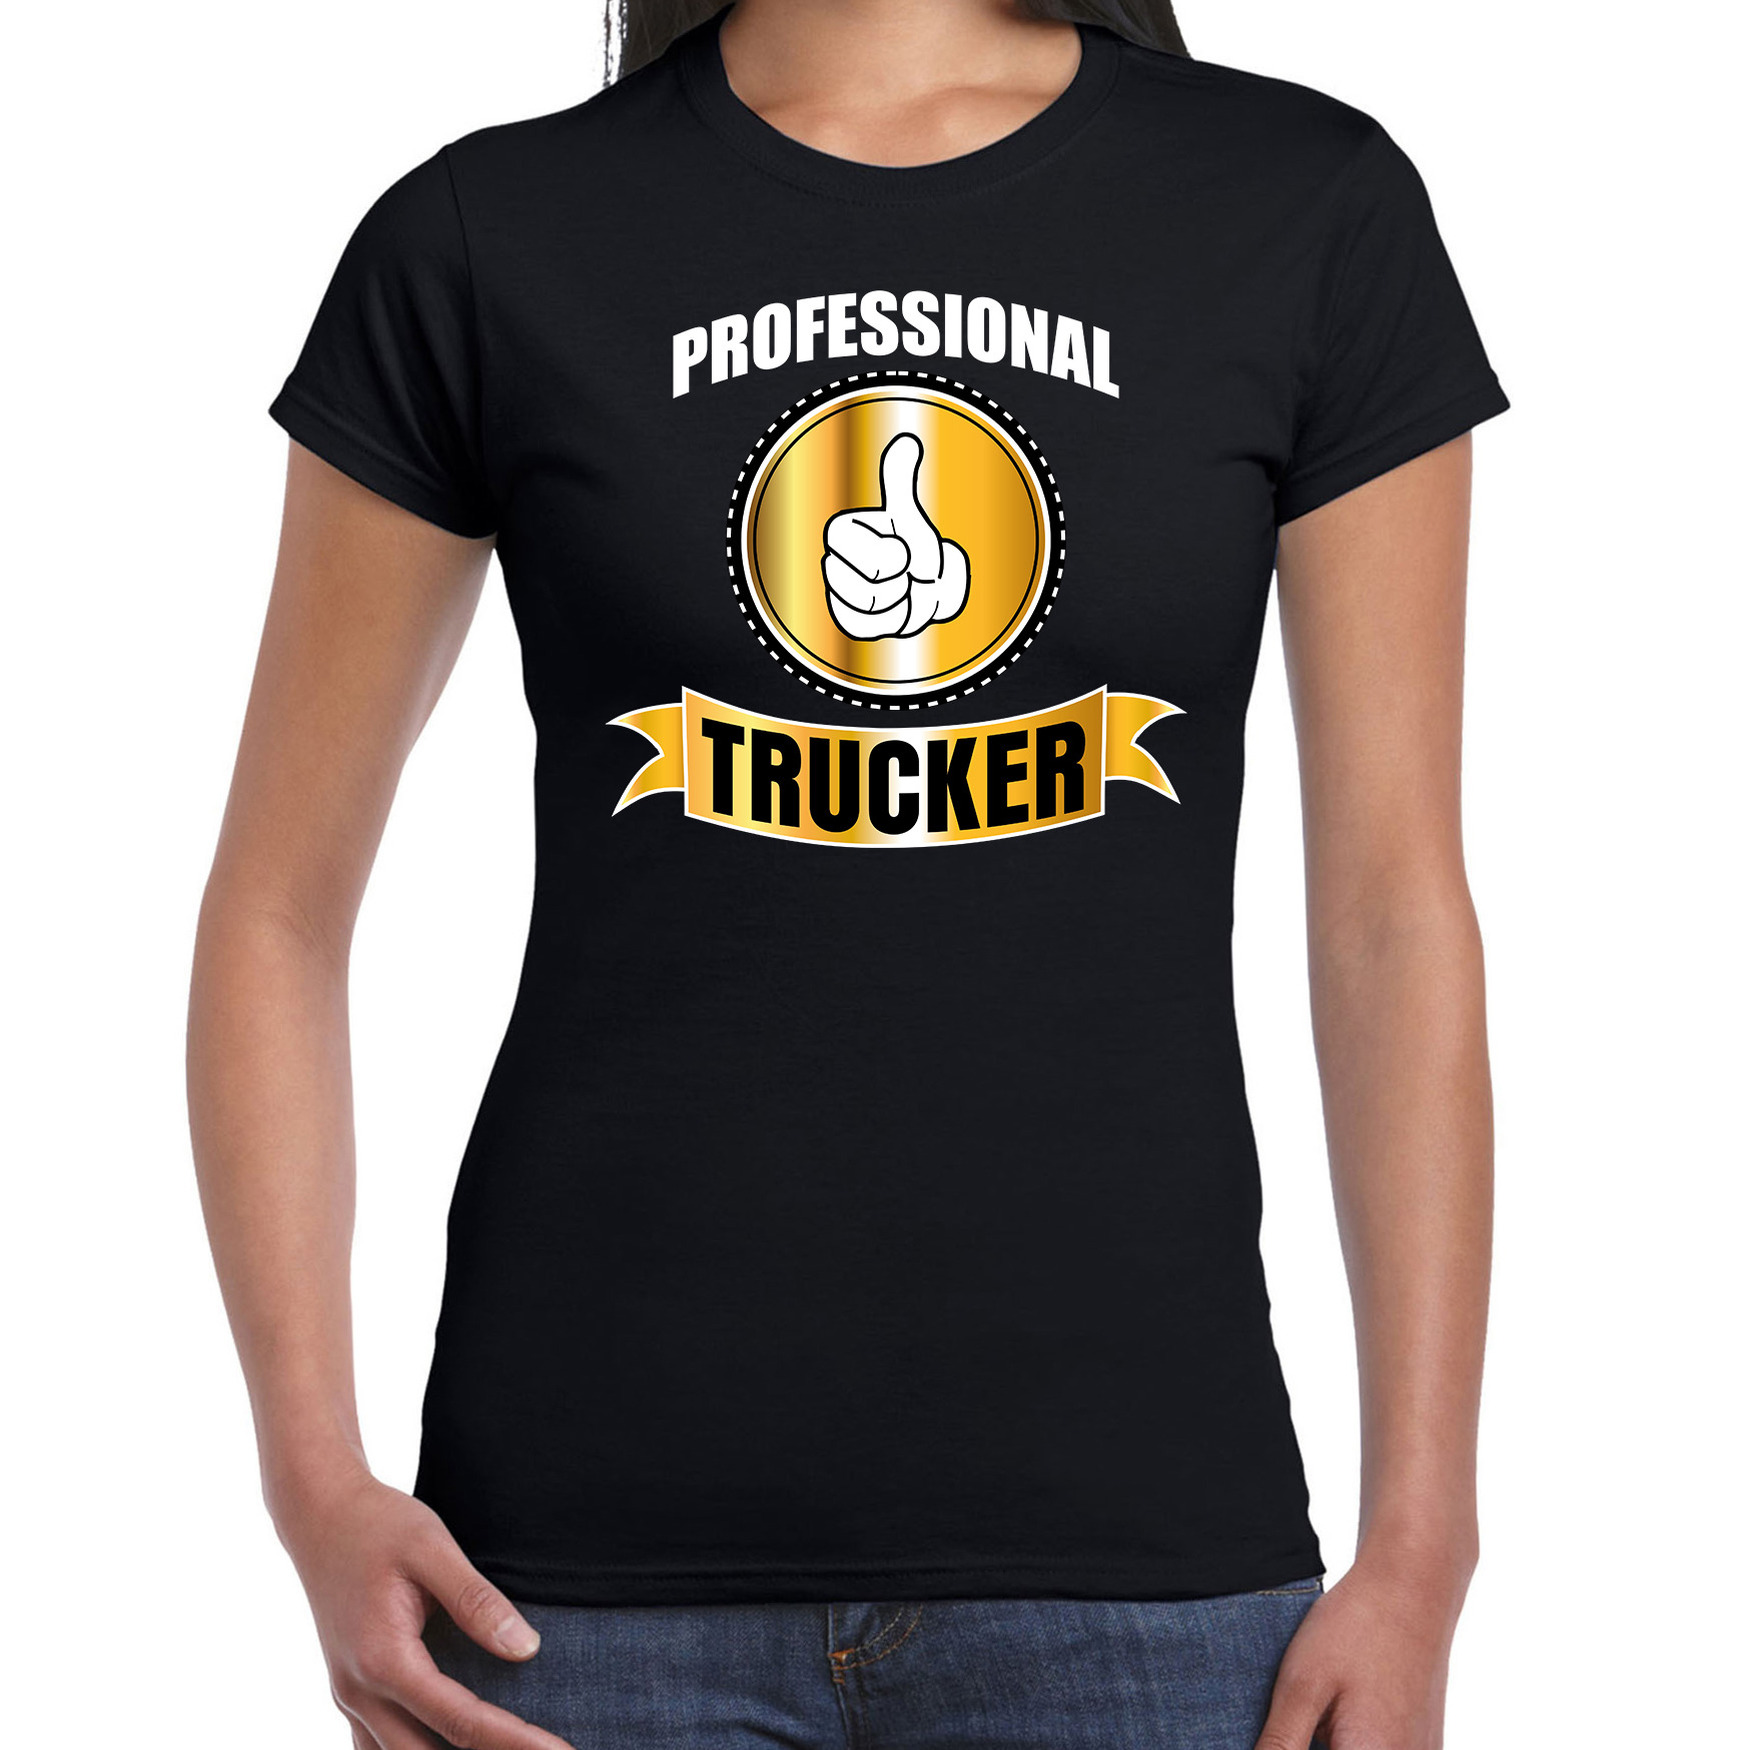 Professional trucker-professionele vrachtwagenchauffeur t-shirt zwart dames Vrachtwagenchauffeur